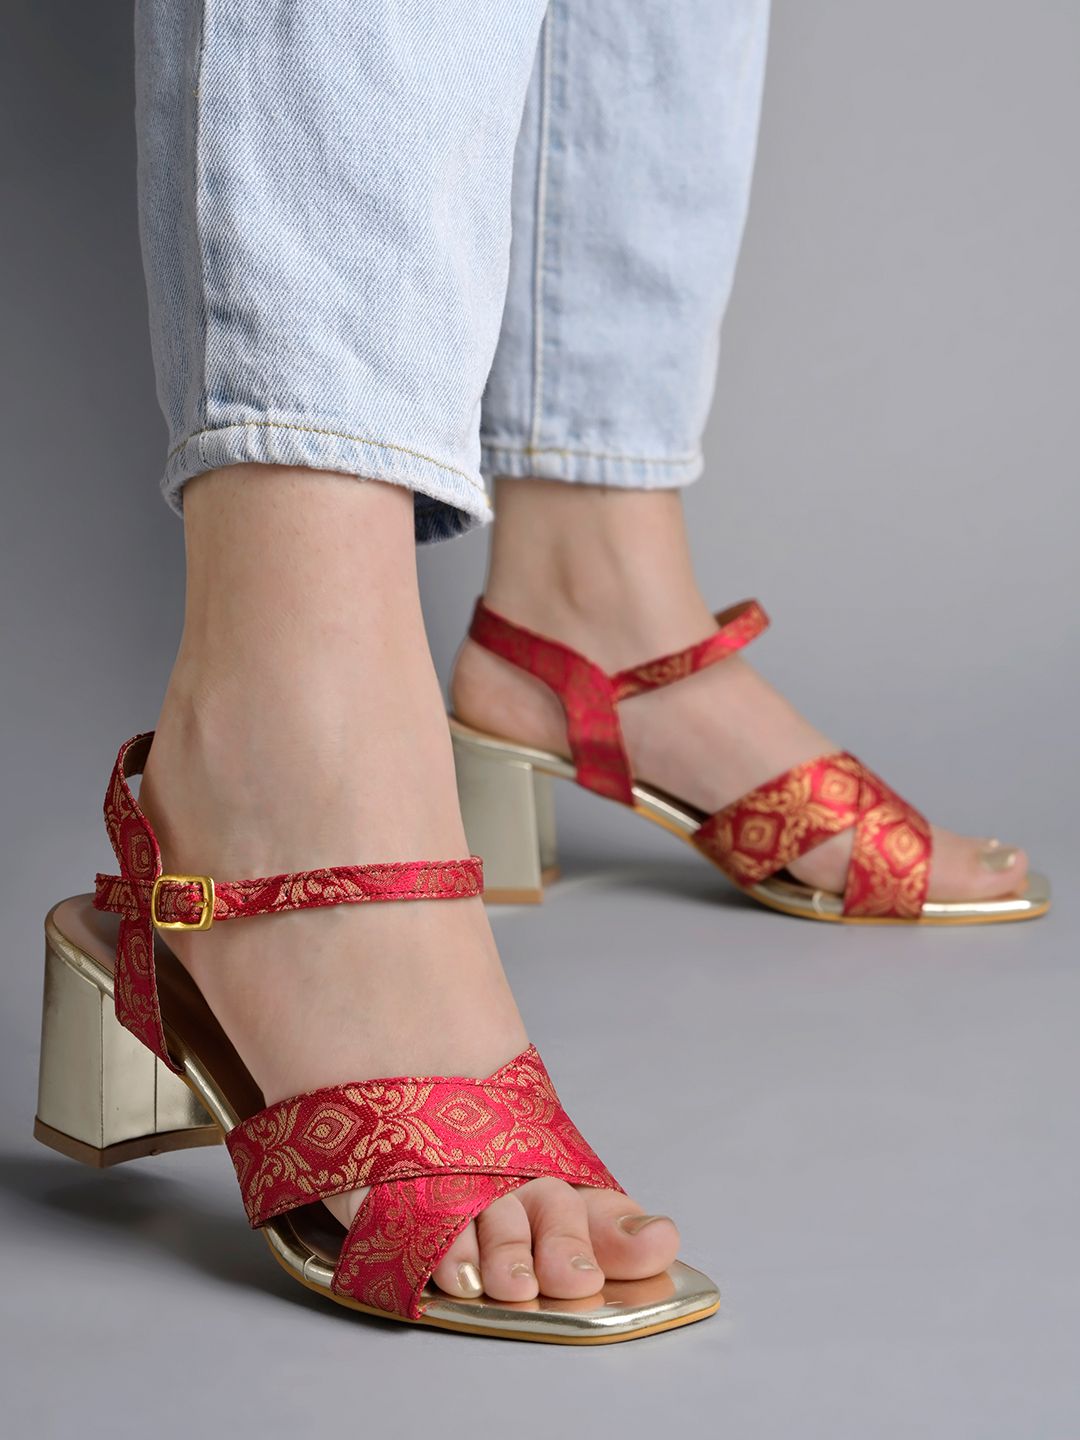     			Shoetopia - Red Women's Sandal Heels